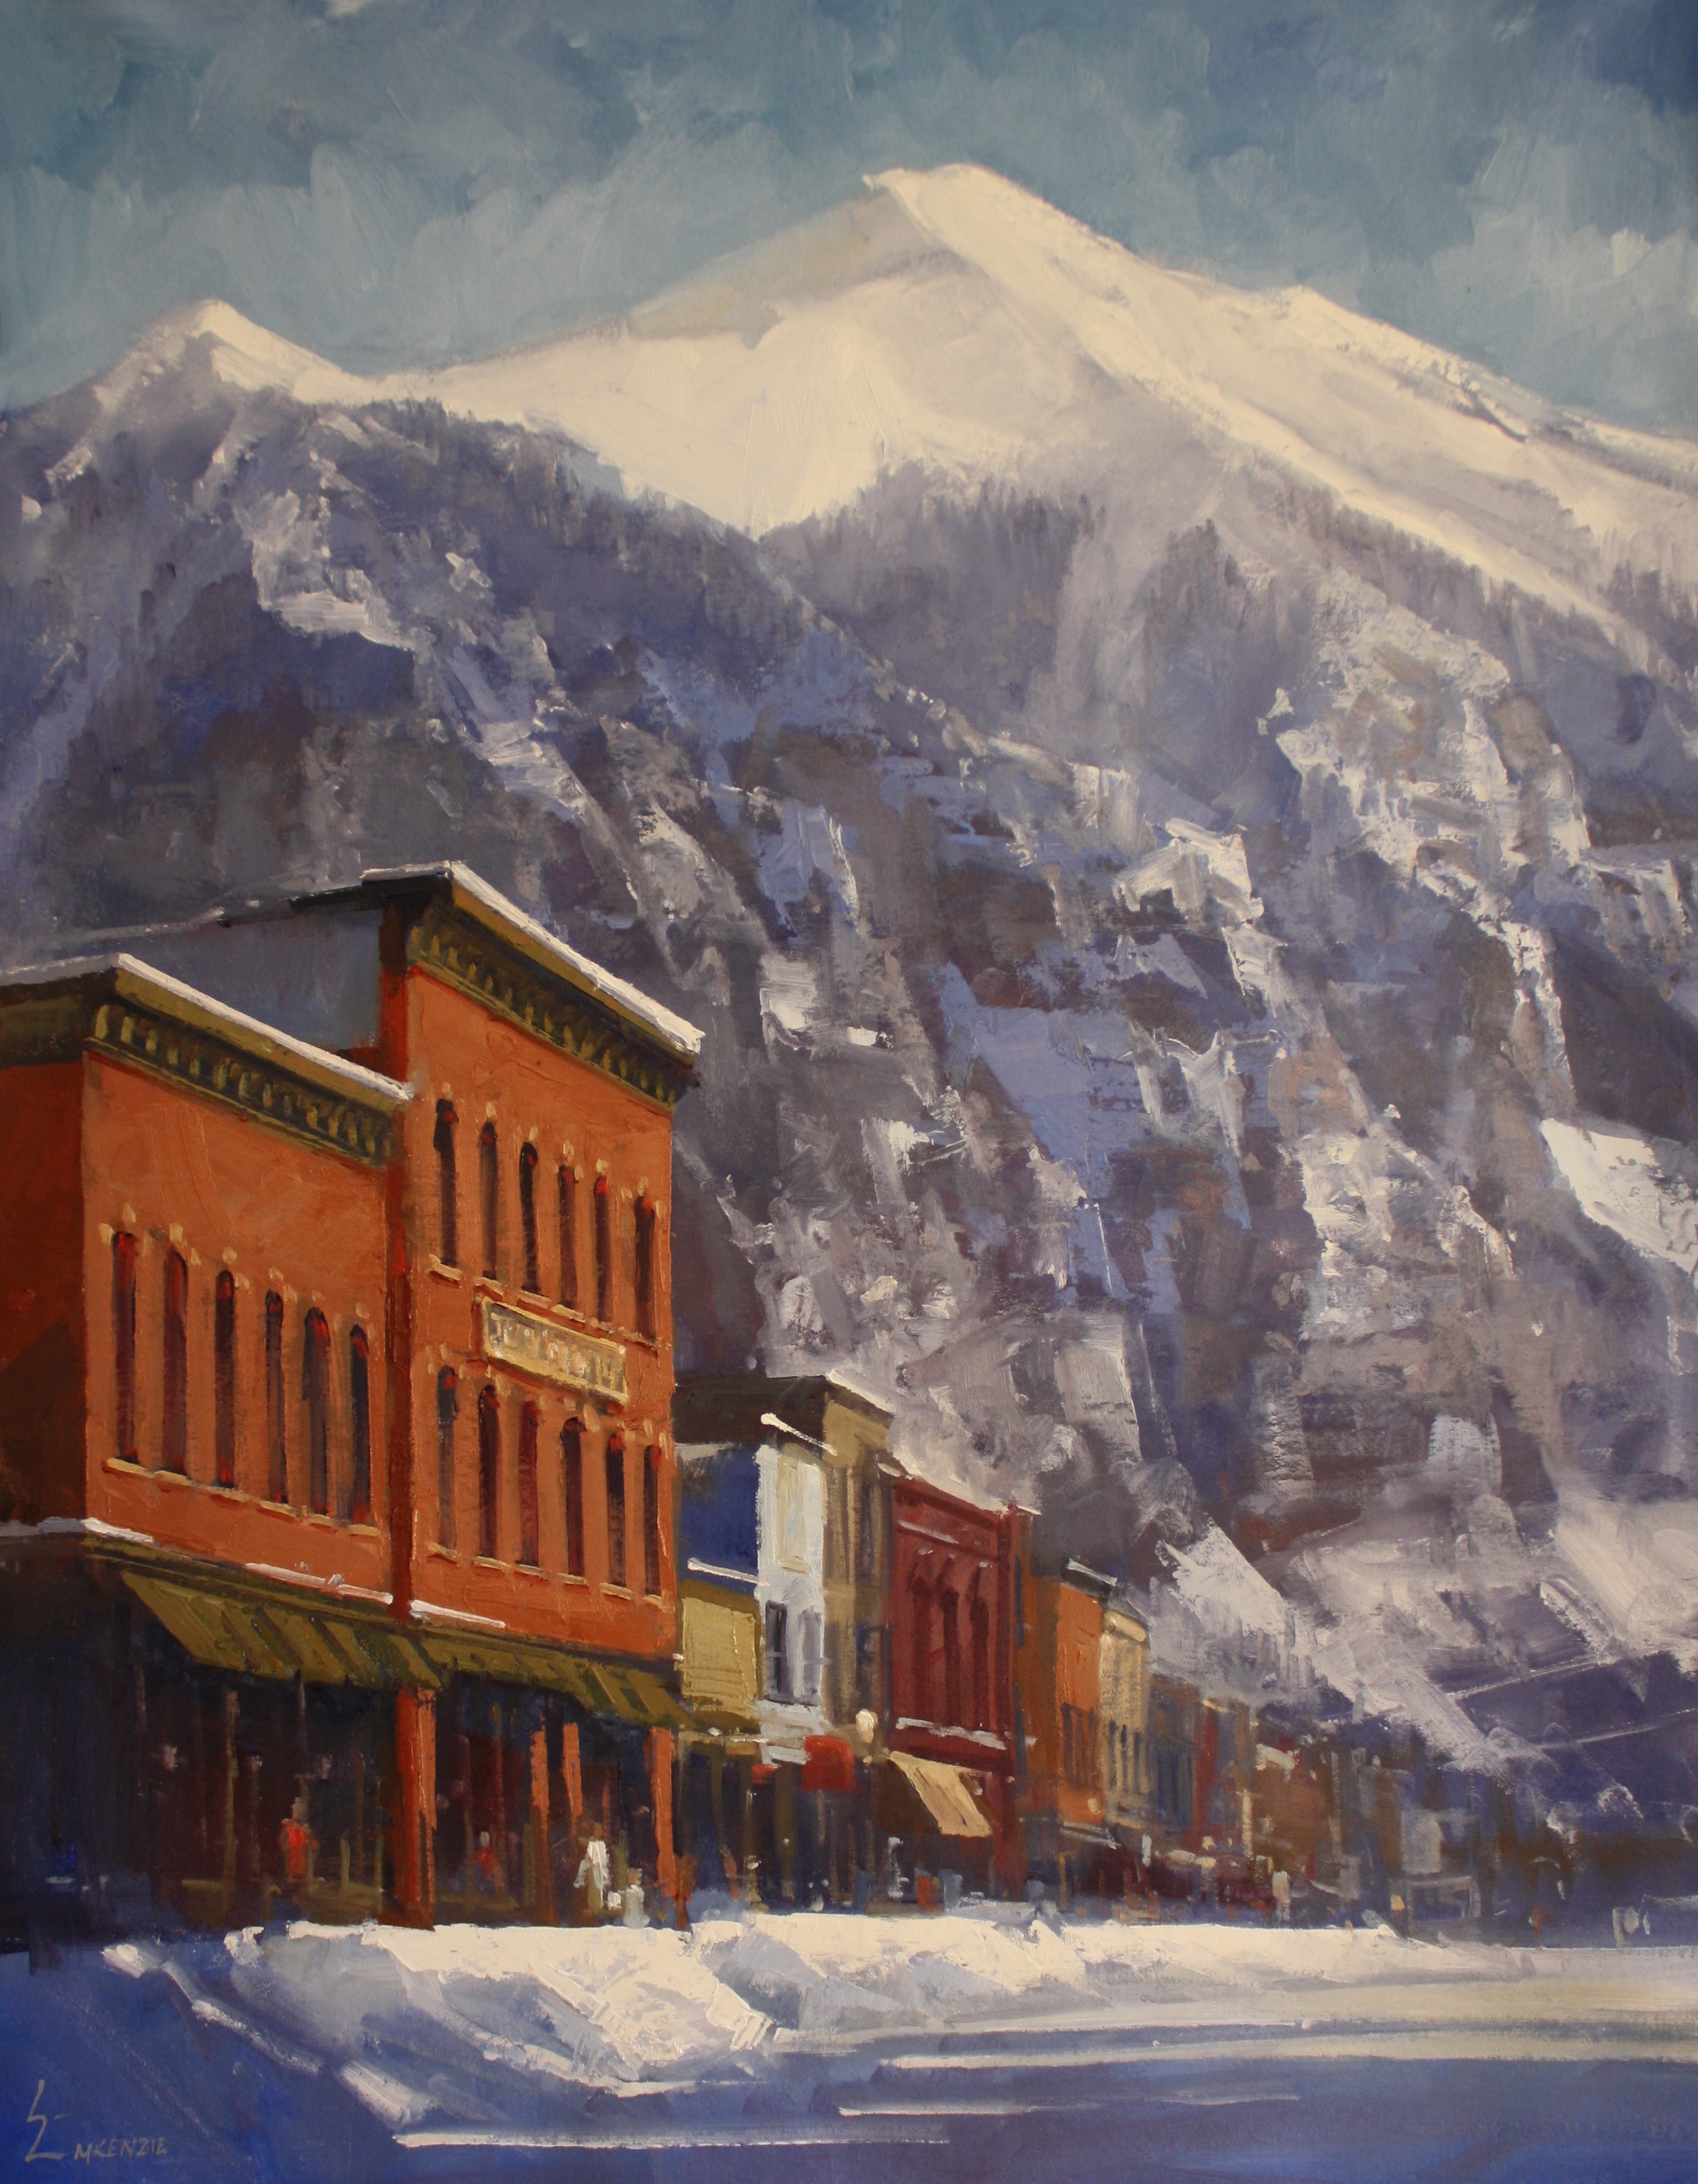  "Colorado Avenue in Winter" 30x40, $5000. 